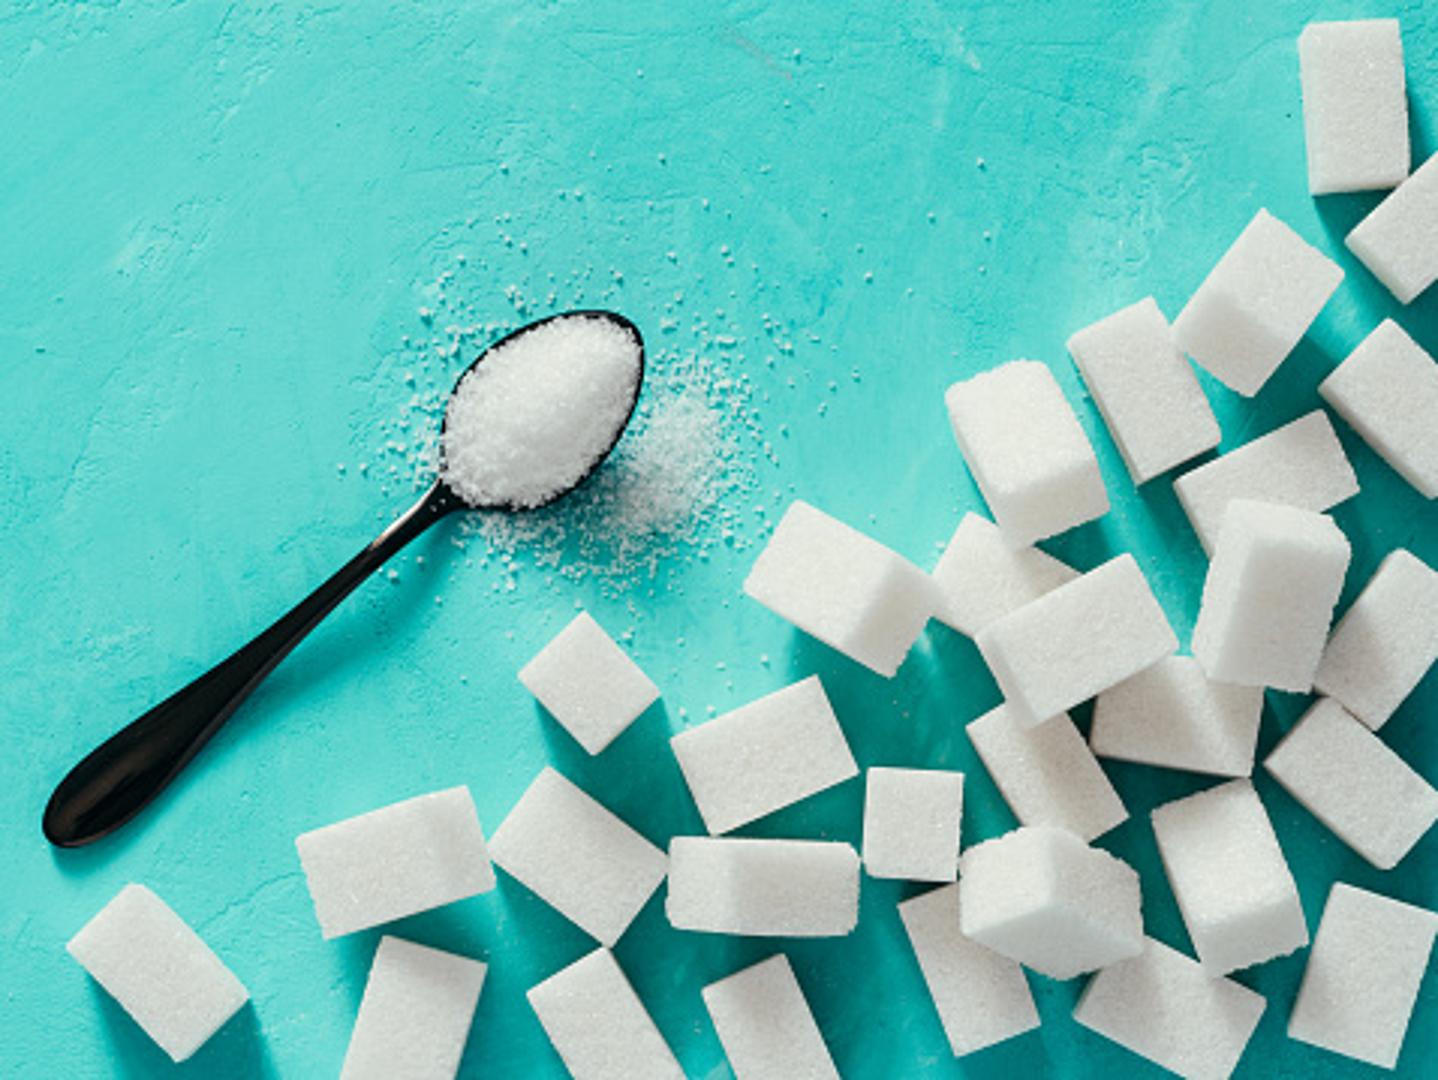 Šećer je slična kao i sol. Slične je teksture i ne može se pokvariti. Uvijek će imati jednaki okus i dati okus hrani. 